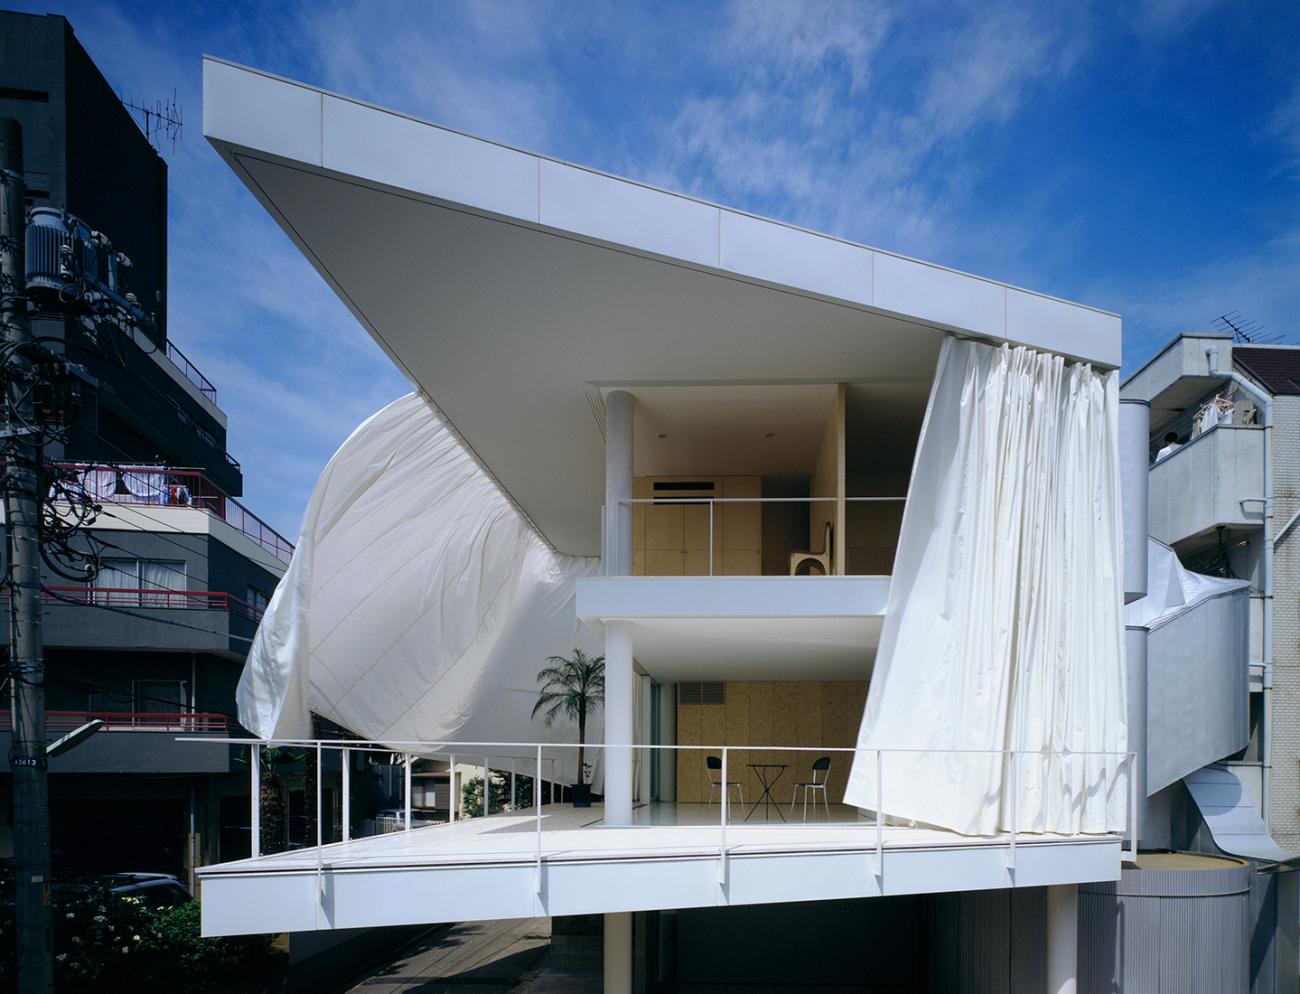 坂茂| The Pritzker Architecture Prize